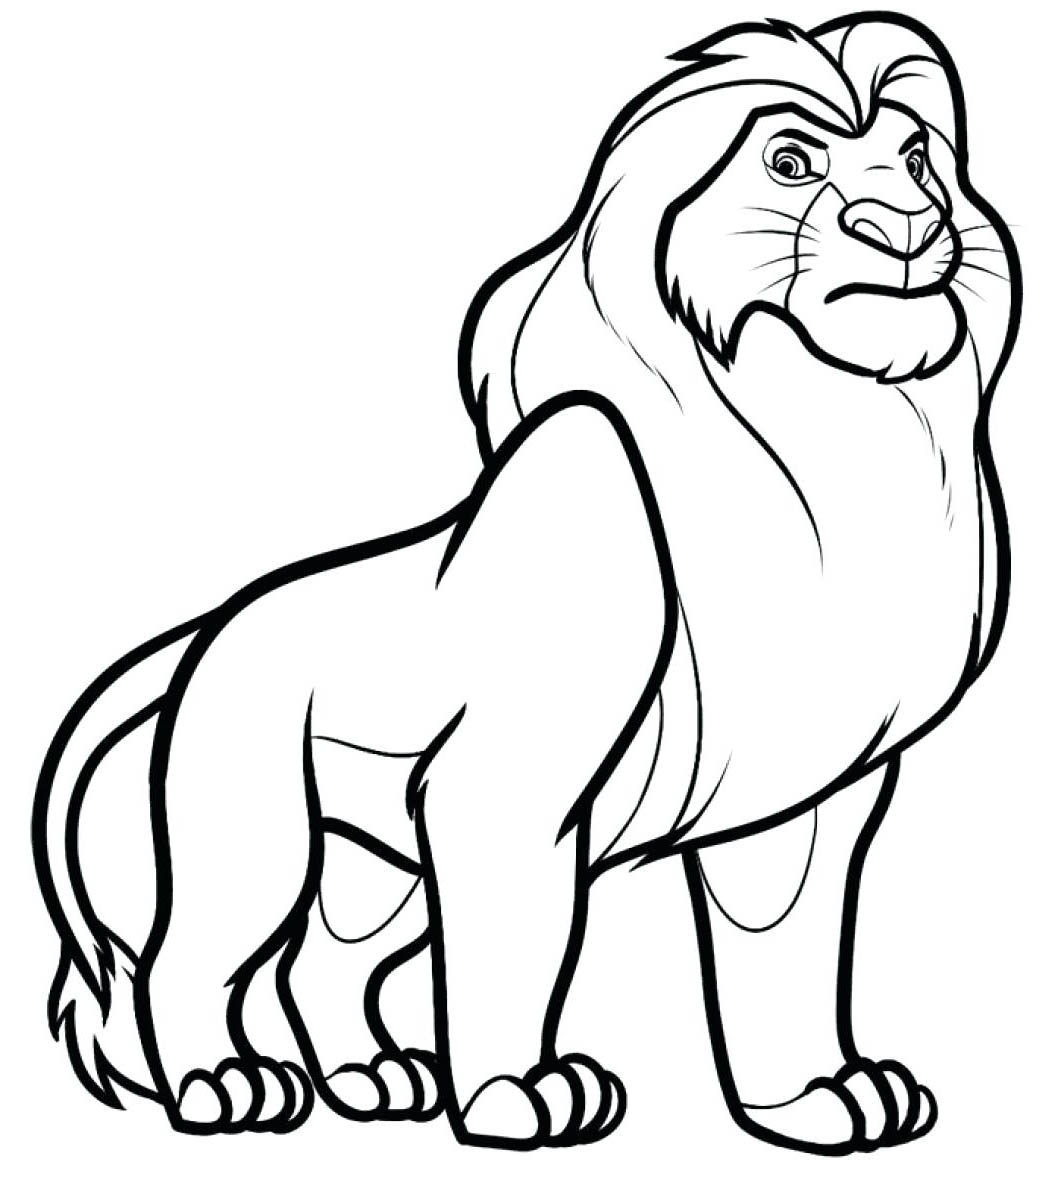 Coloración de un León majestuoso